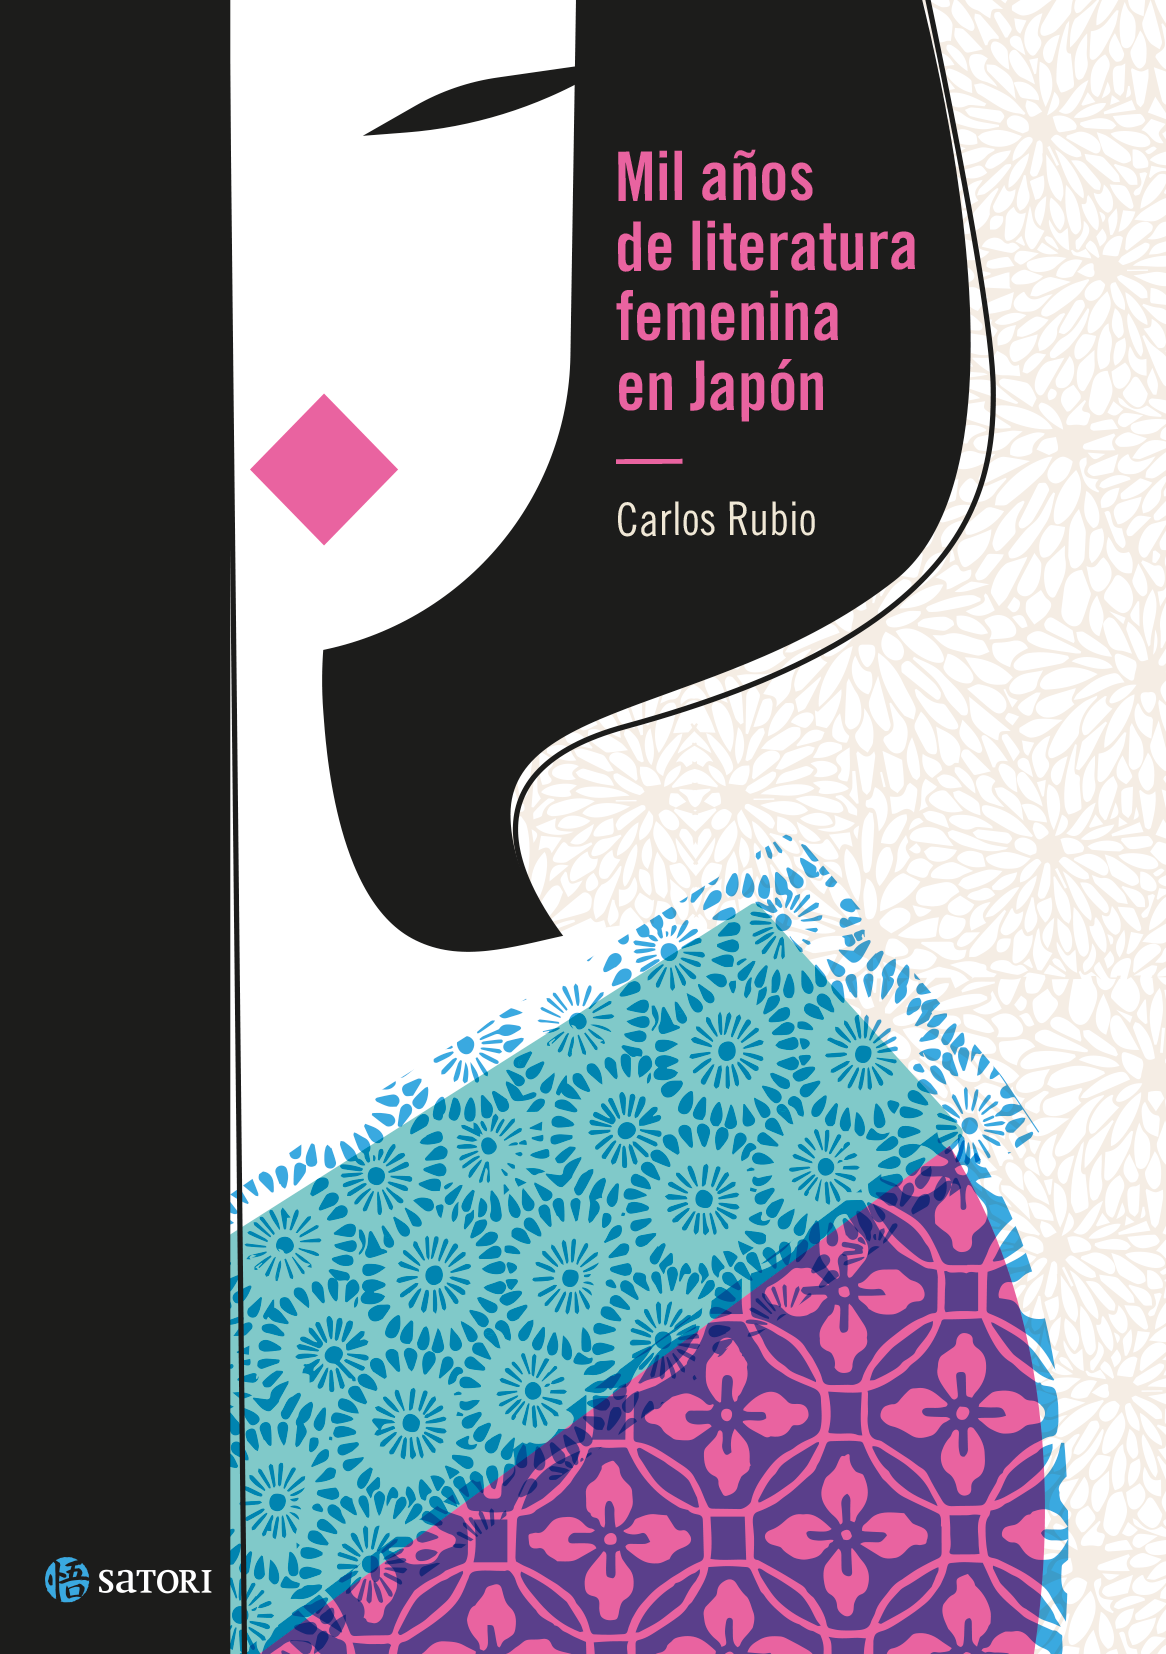 book cover diseño editorial femenina JAPON libro literatura mujer